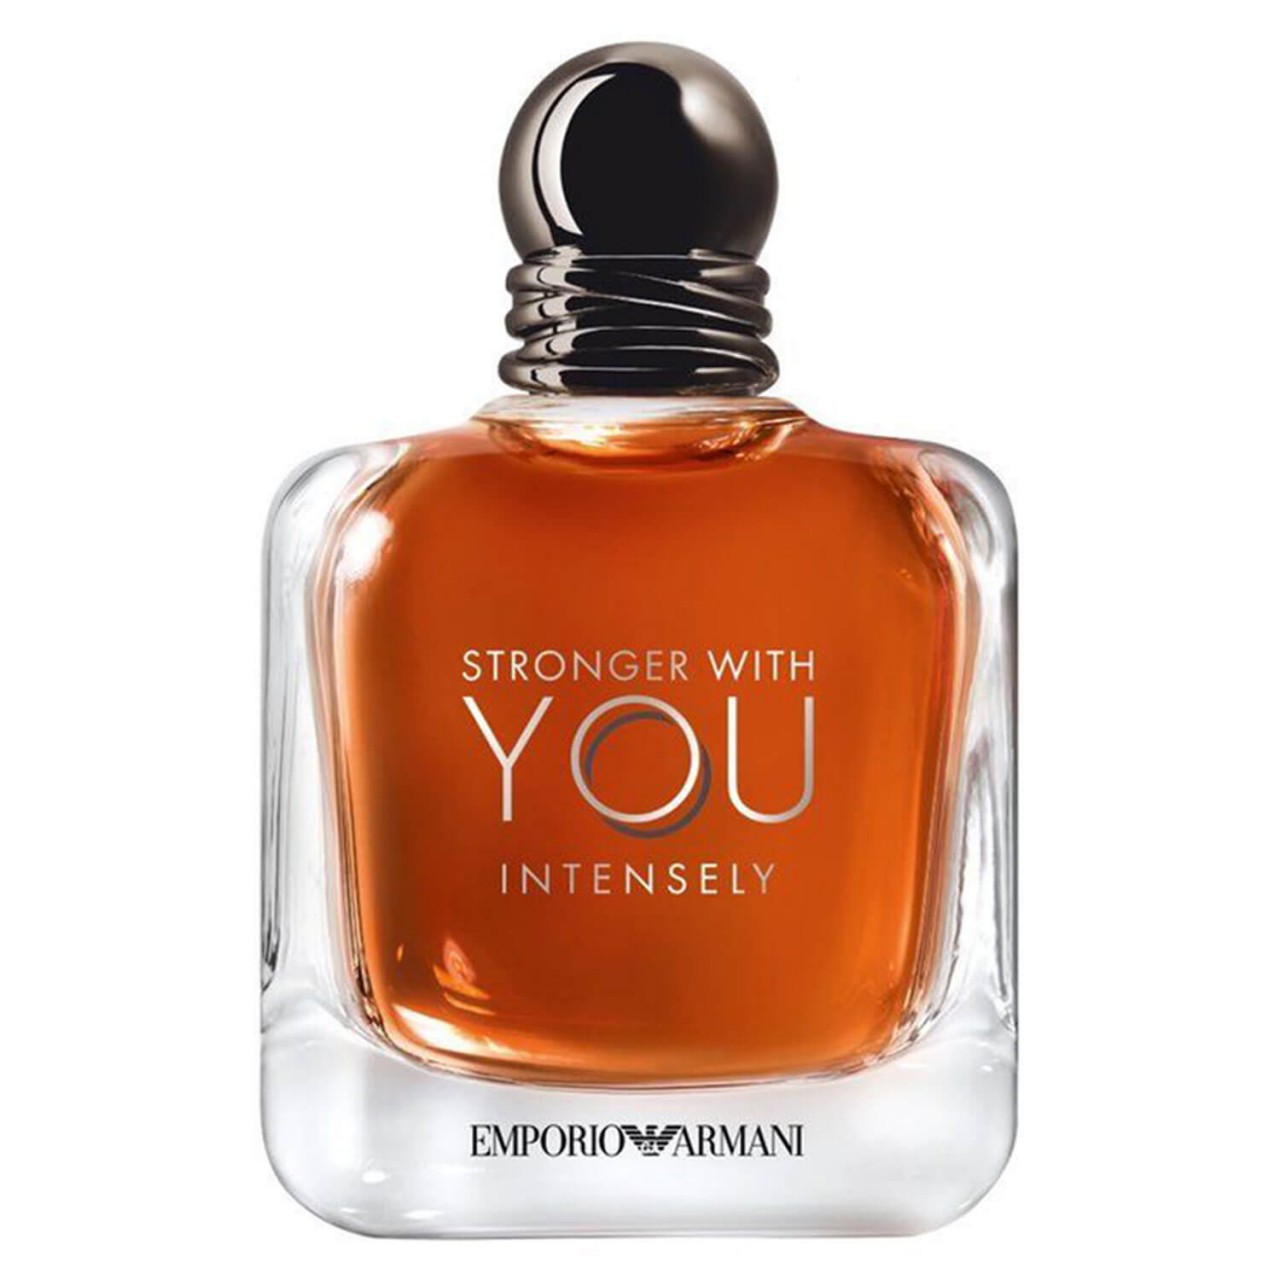 Emporio Armani - Stronger With You Intense Eau de Parfum von Giorgio Armani